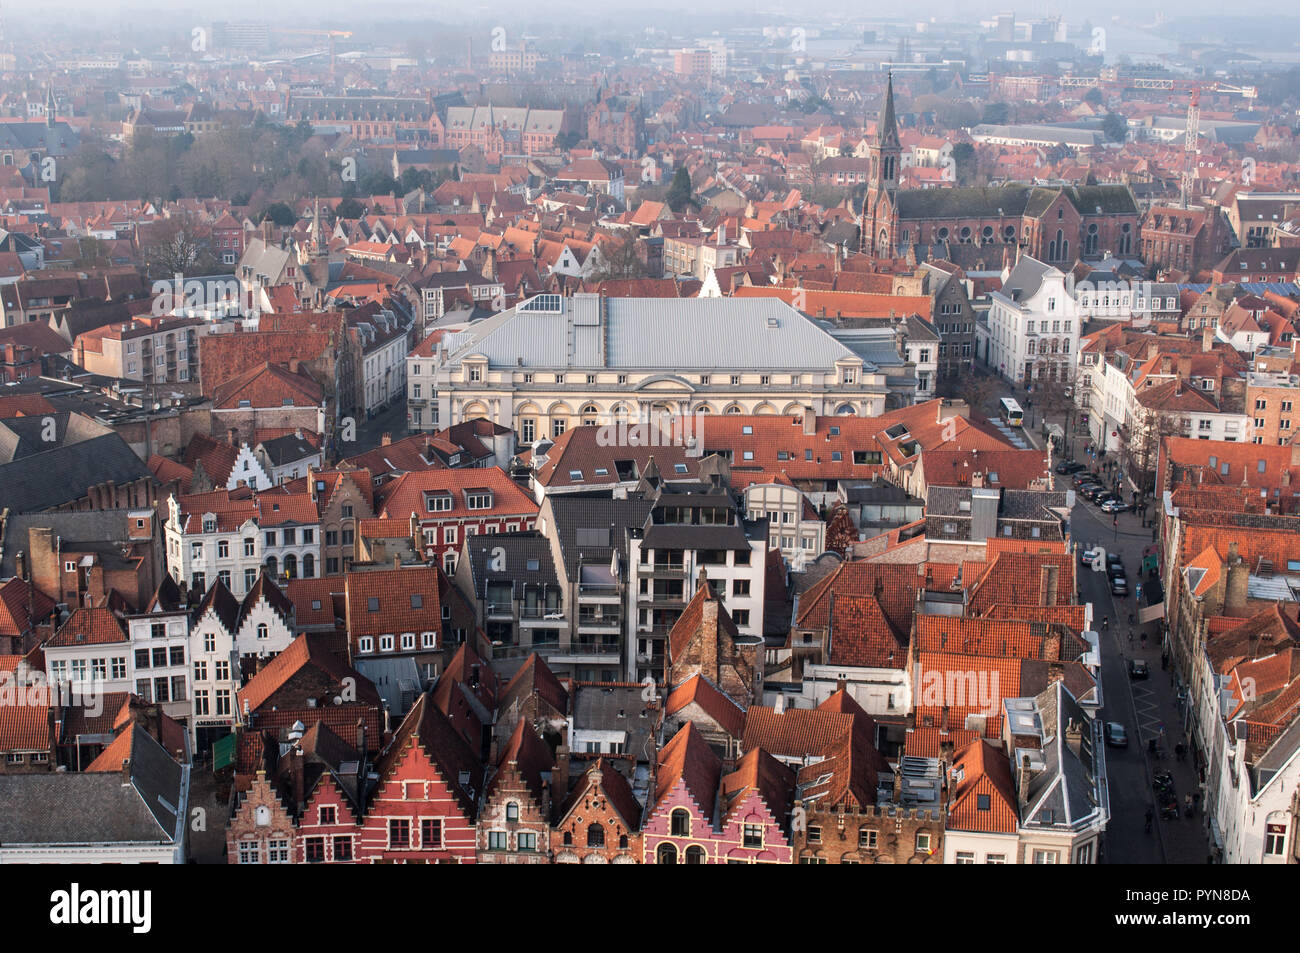 Ein Blick vom Glockenturm der flämischen Stadt Brügge. Belgien, Flandern, Europa. Luftaufnahme. Stockfoto